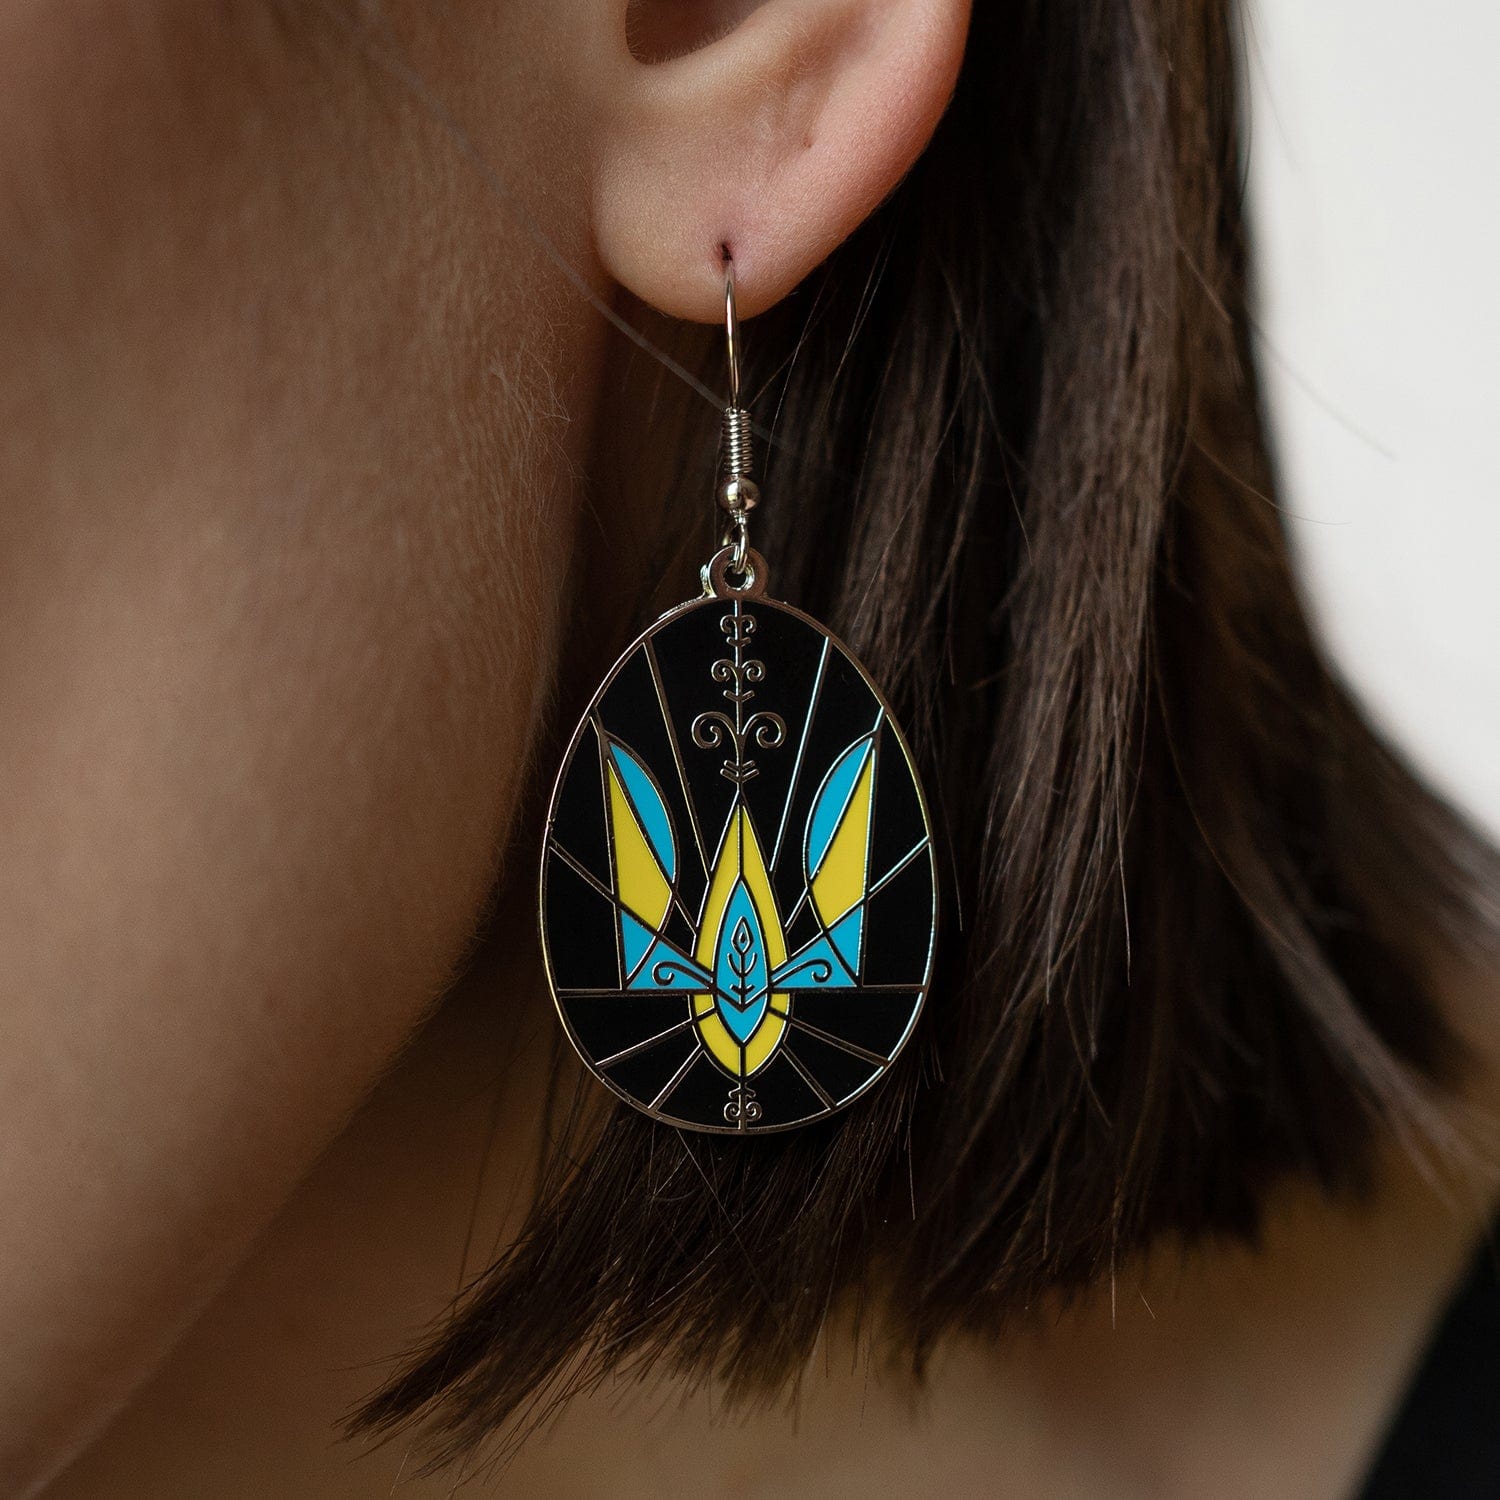 Ukrainian Easter Egg (Pysanky) Earrings - Trident